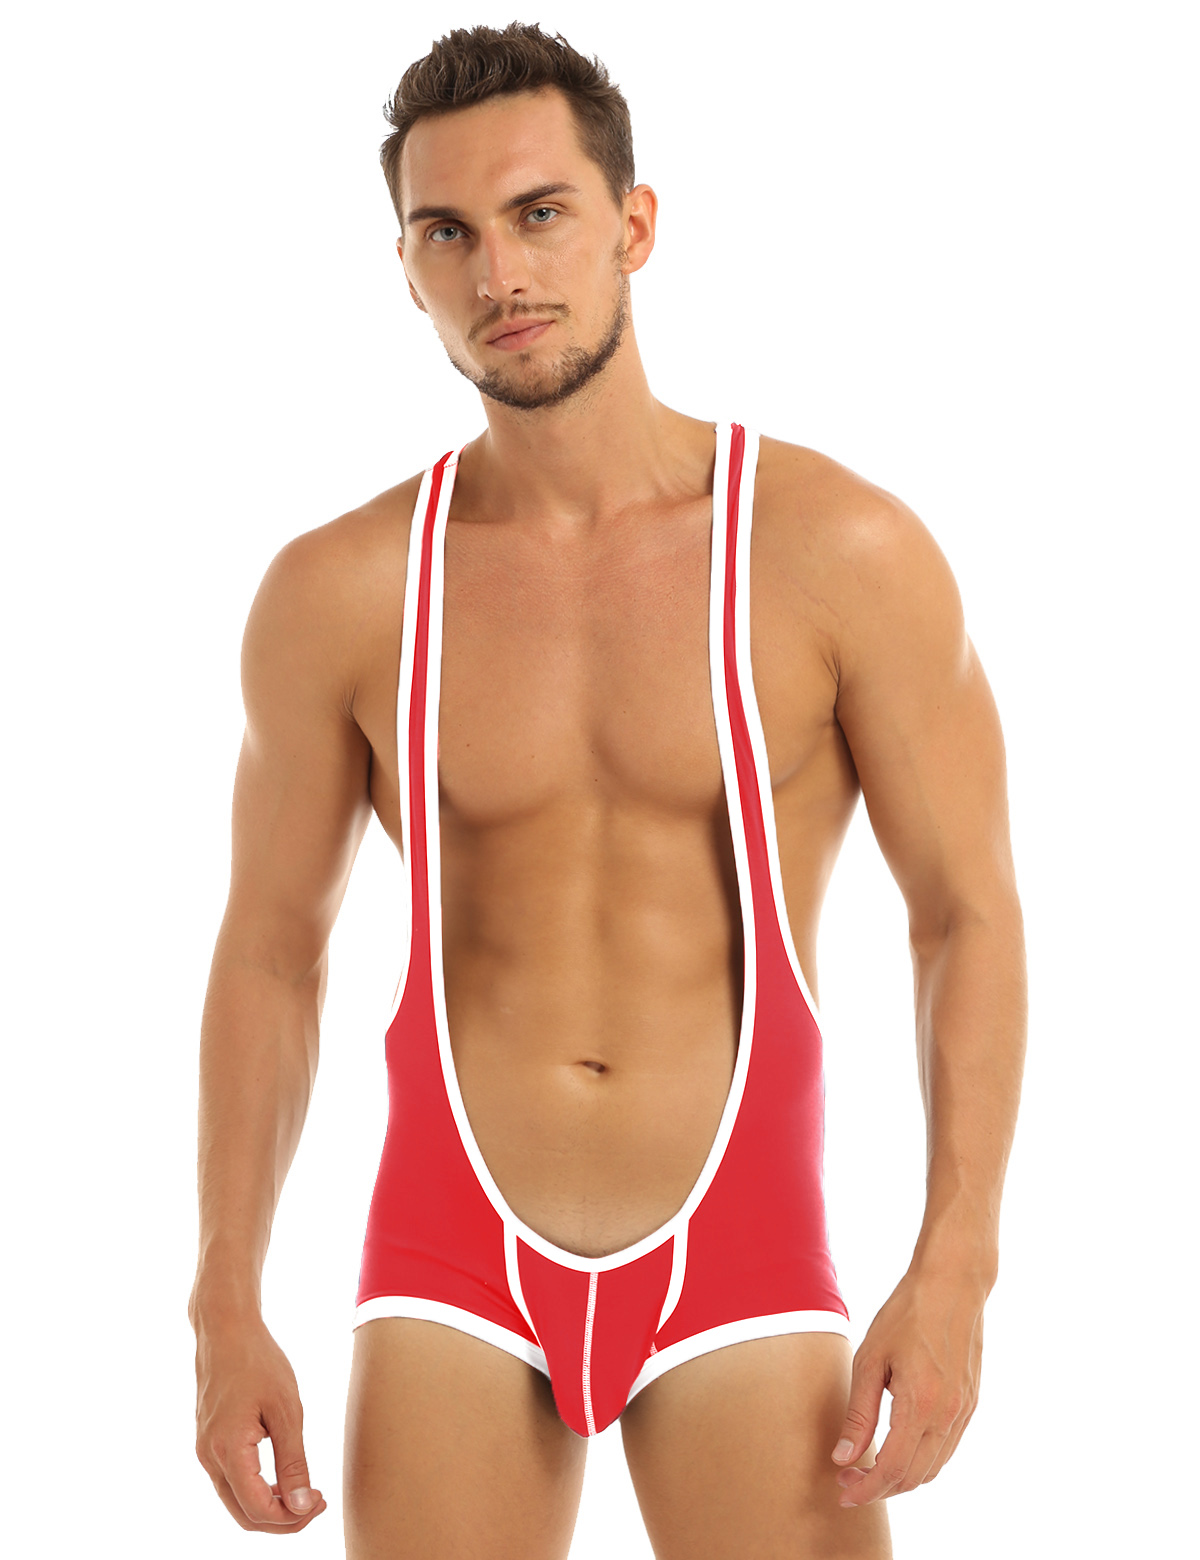 Men's Open Butts Briefs Jockstrap Mankini Bodysuit Underwear Wrestling Singlet 